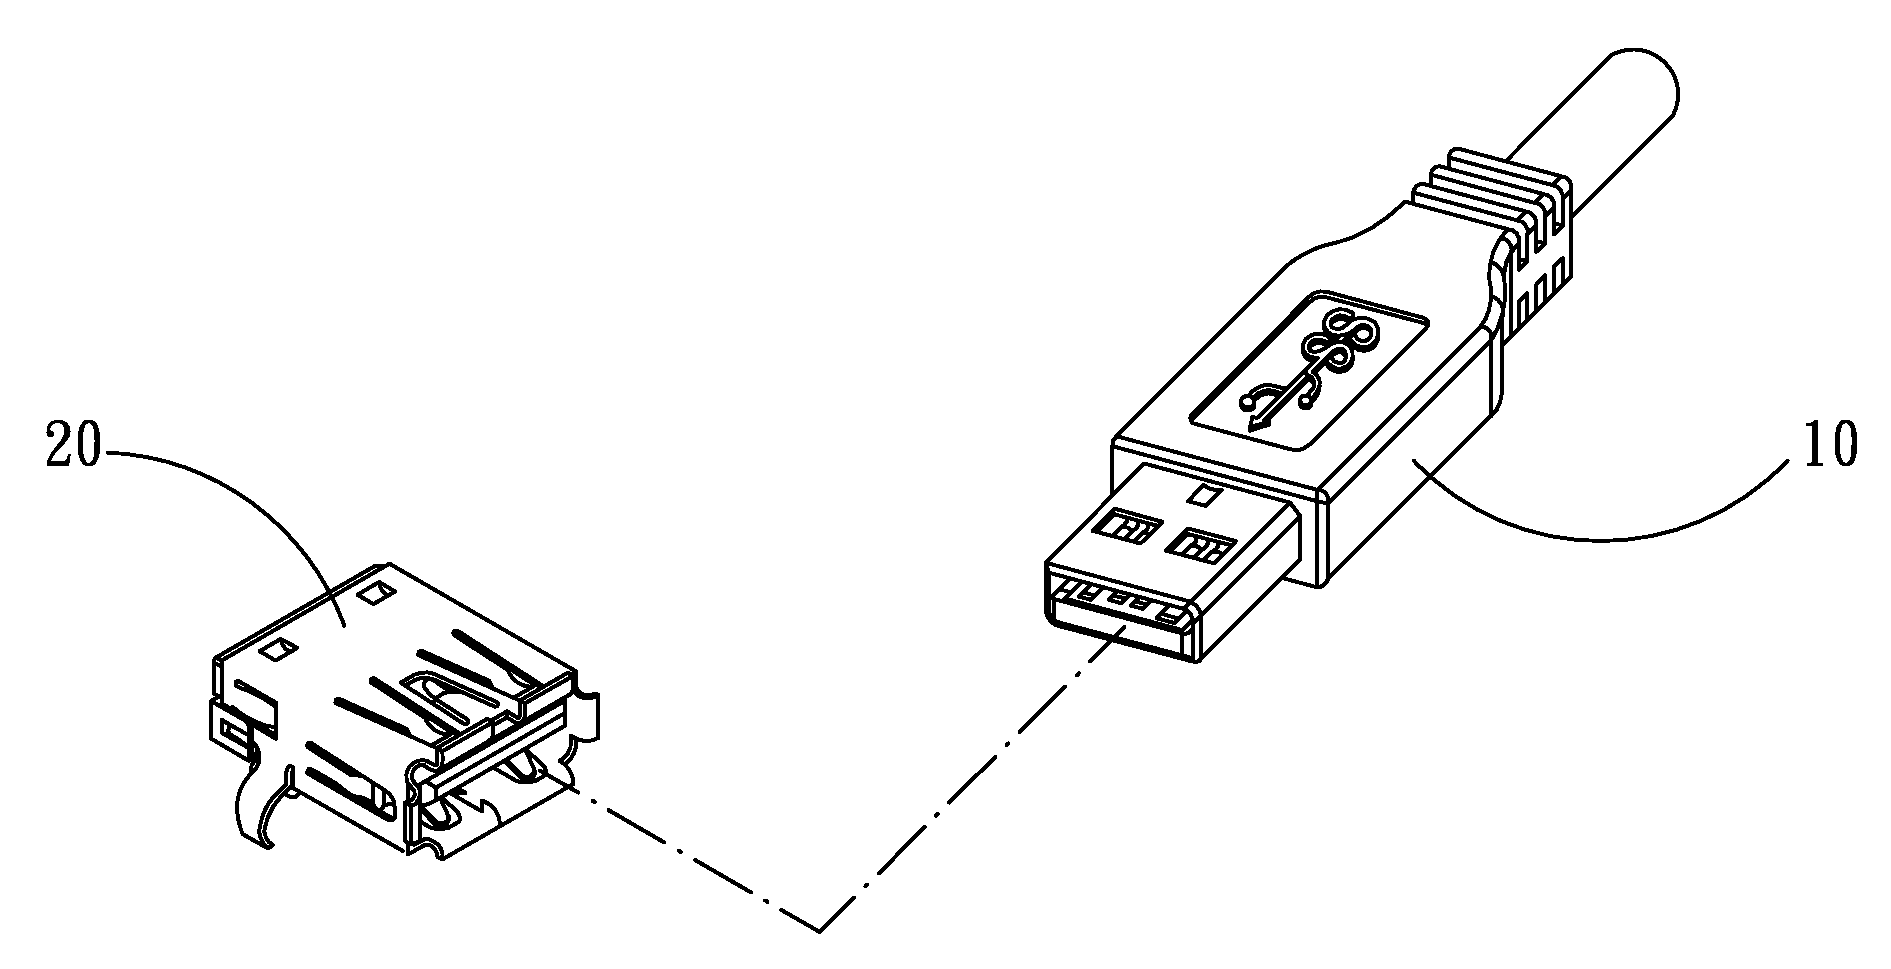 USB a-type socket